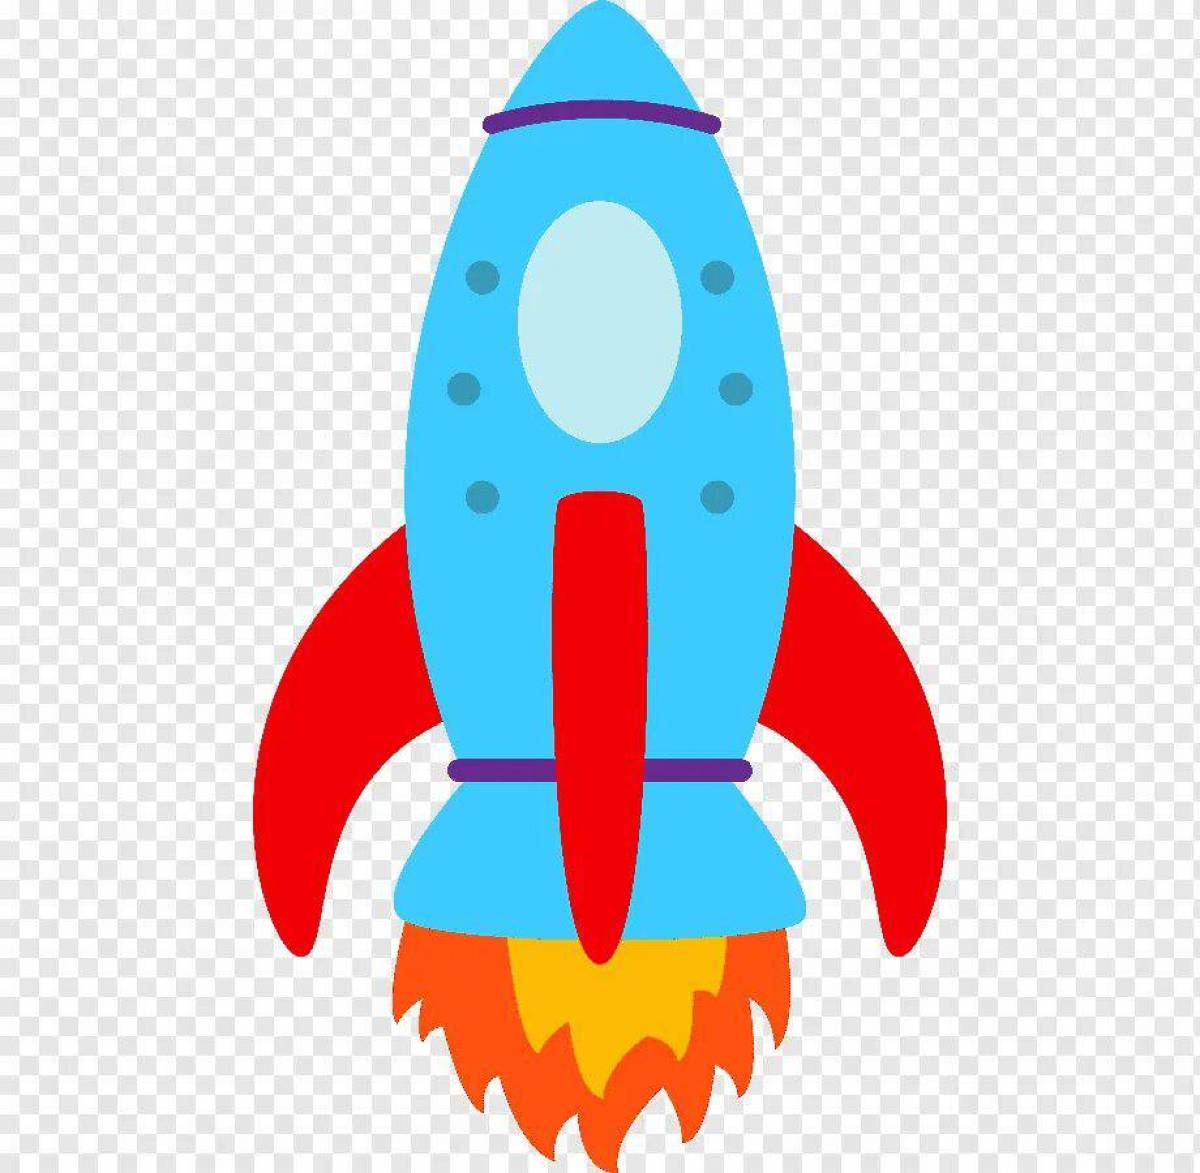 Ракета картинки для детей дошкольного возраста. Ракета для детей. Изображение ракеты для детей. Цветная ракета для детей. Космическая ракета для детей.